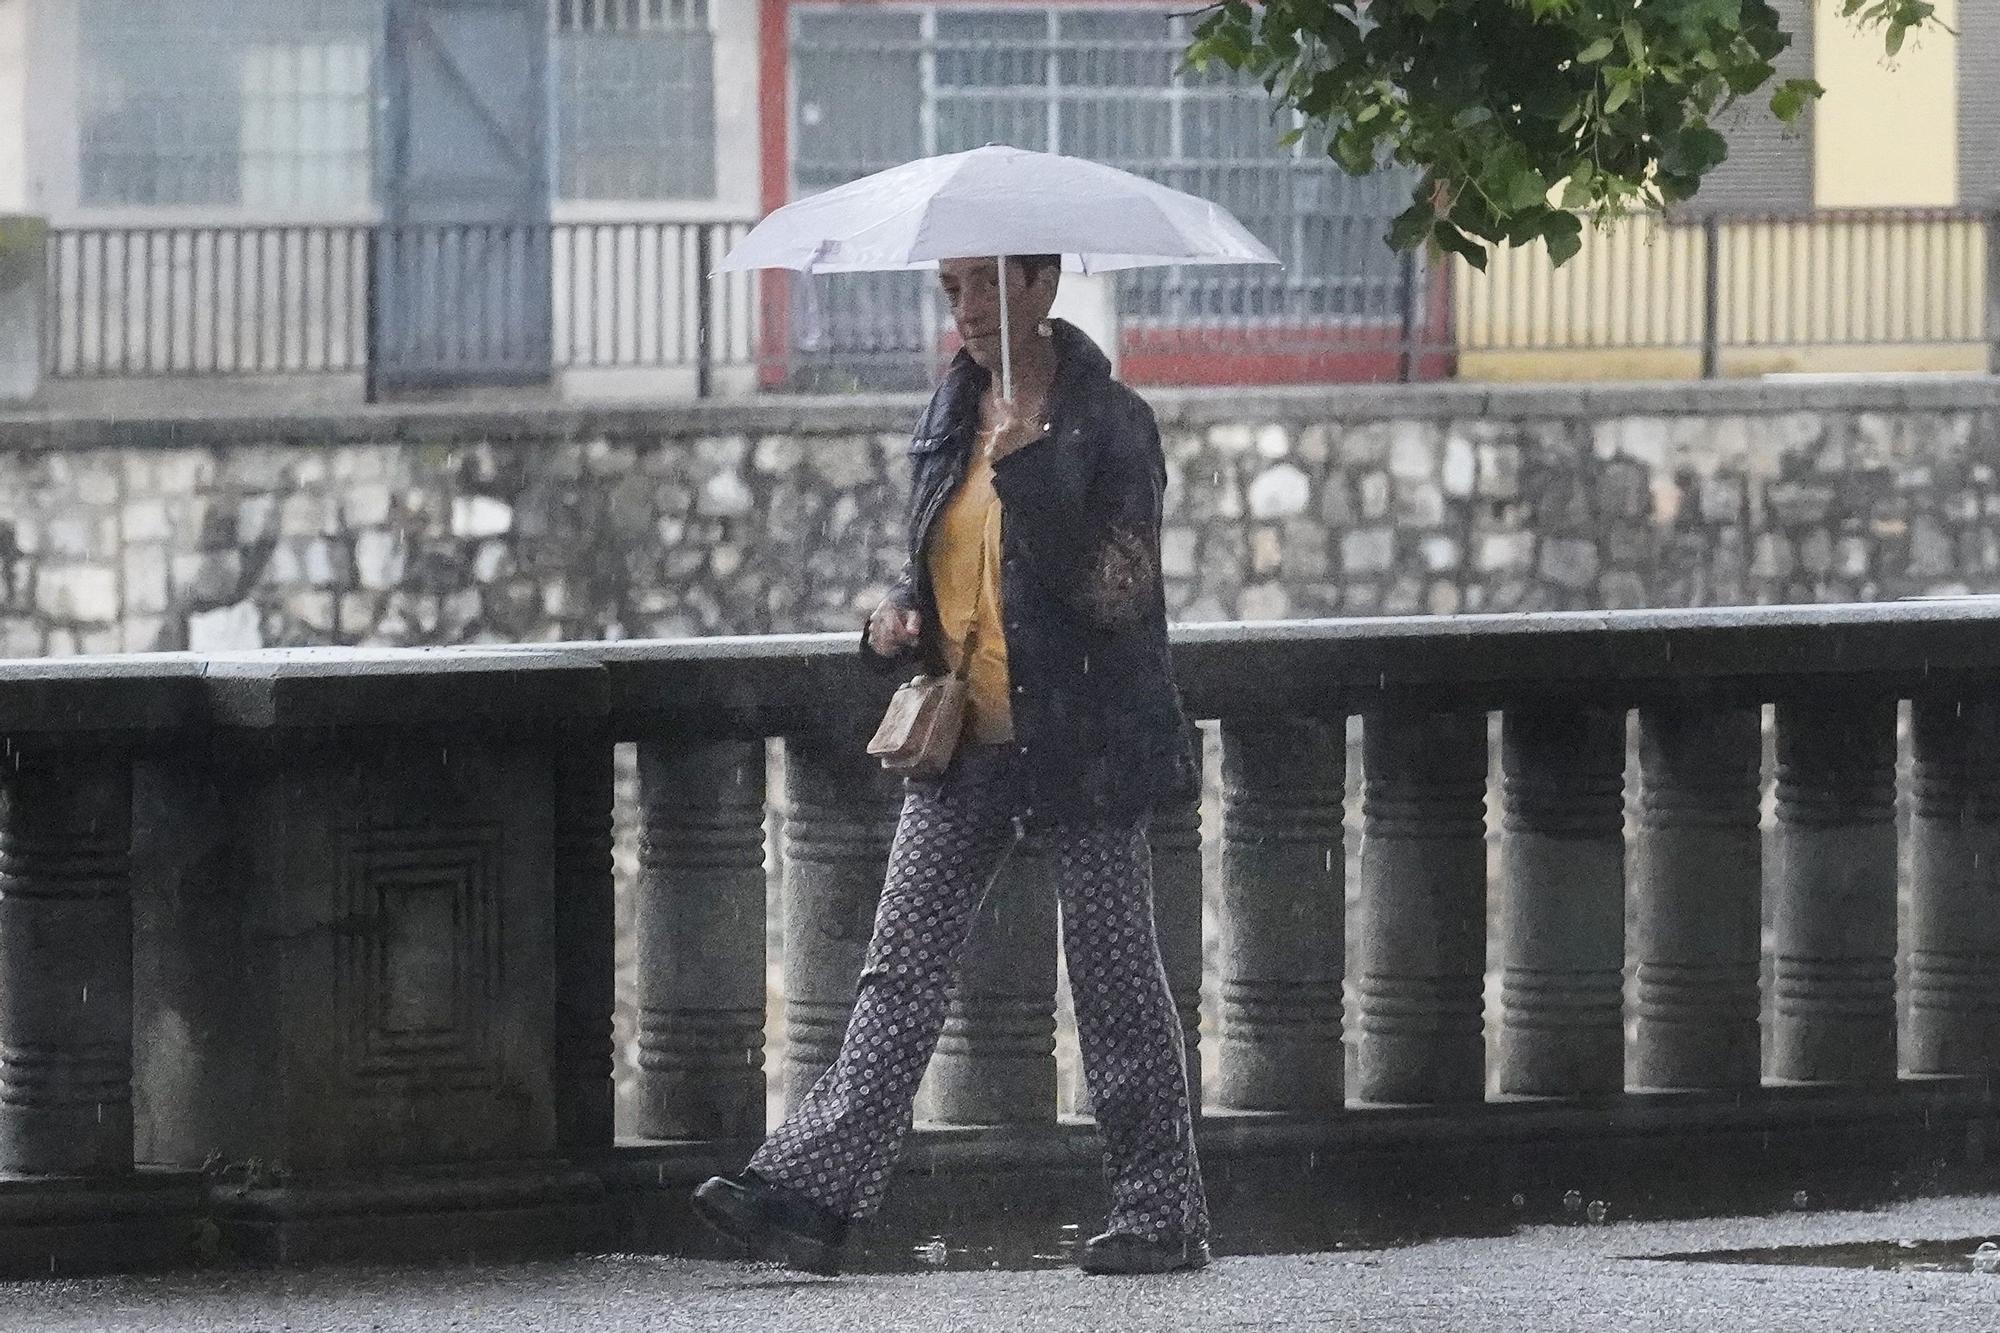 La pluja fa acte de presència a la ciutat de Girona durant el cap de setmana